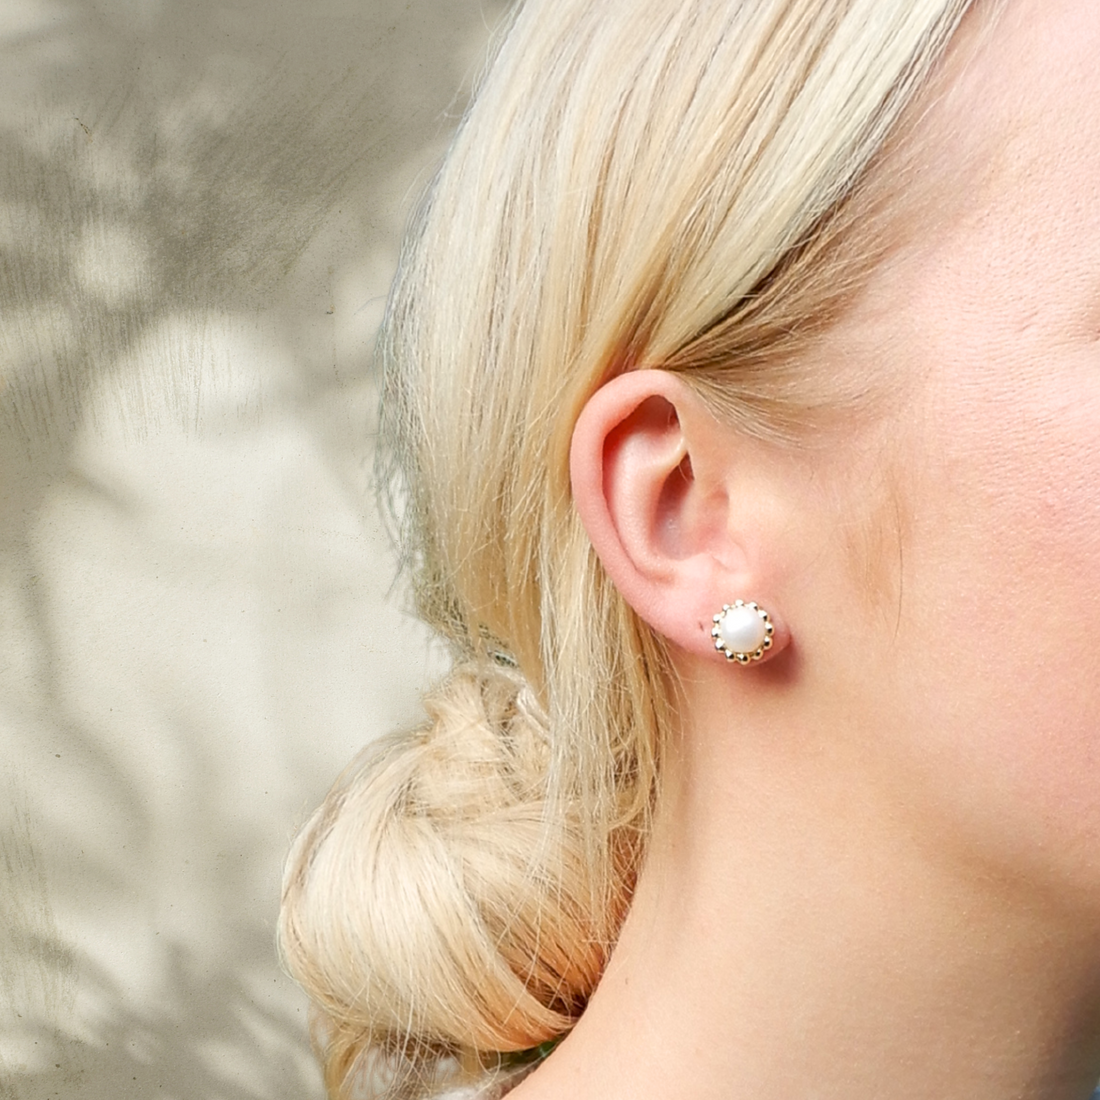 Zoetwaterparel oorstekers 8mm rond in een bloemmodel met een vergulde rand